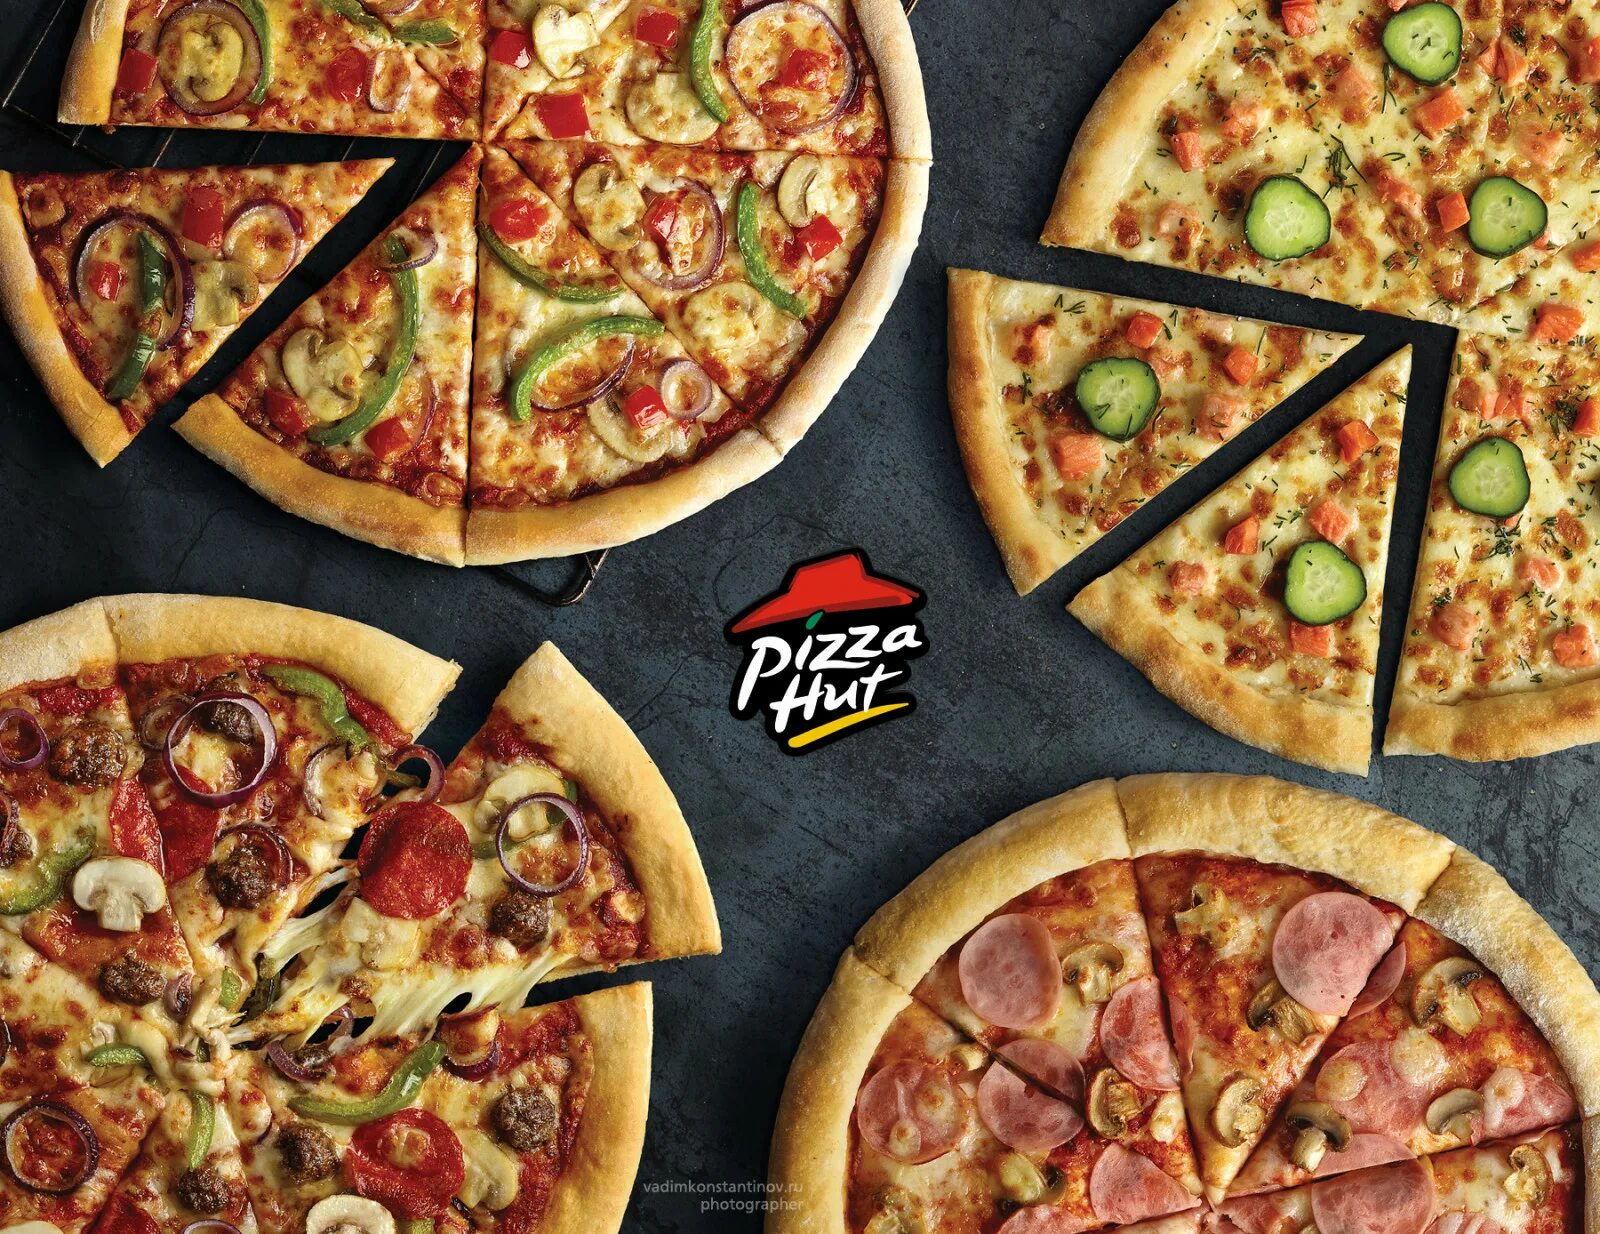 Pizza ready мод много. Реклама пиццы. Рекламный баннер пиццерии. Пицца несколько видов. Пицца баннер.